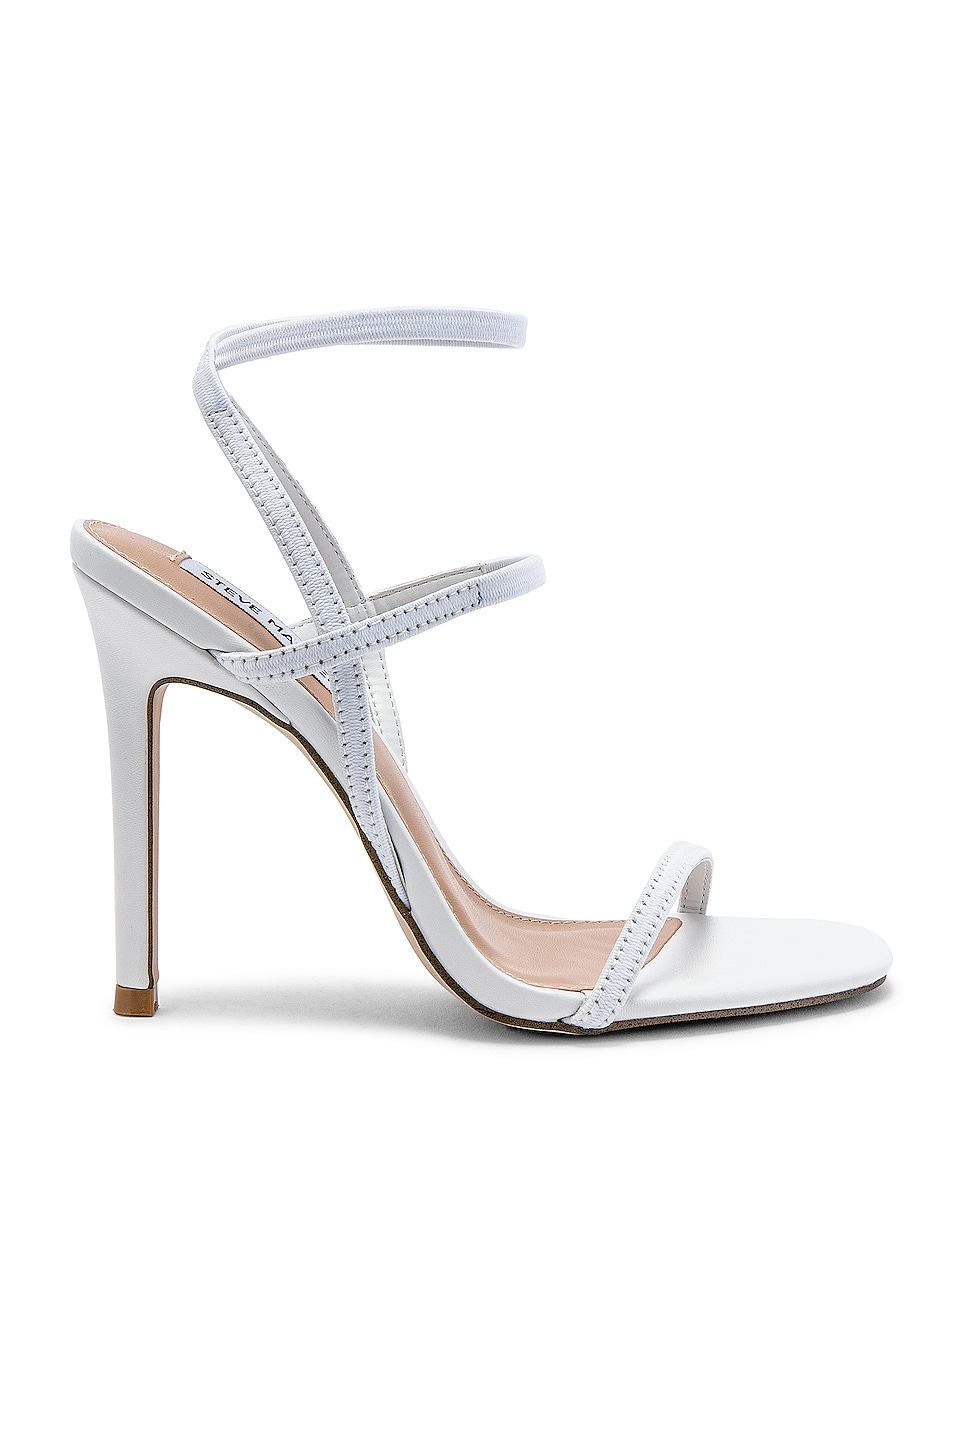 Buy > white heels steve madden > in stock